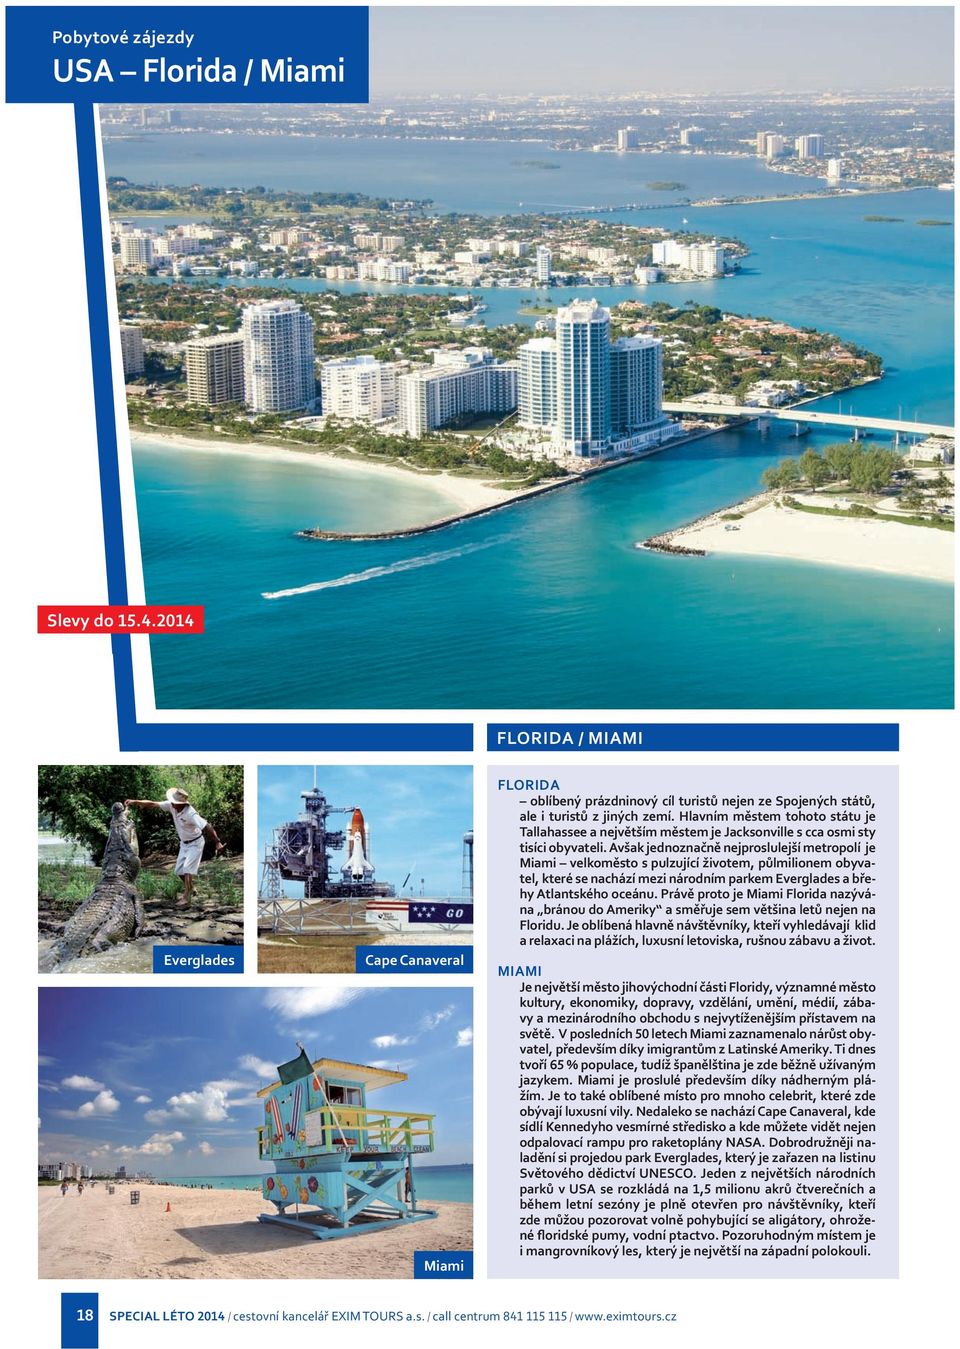 Avšak jednoznačně nejproslulejší metropolí je Miami velkoměsto s pulzující životem, půlmilionem obyvatel, které se nachází mezi národním parkem Everglades a břehy Atlantského oceánu.